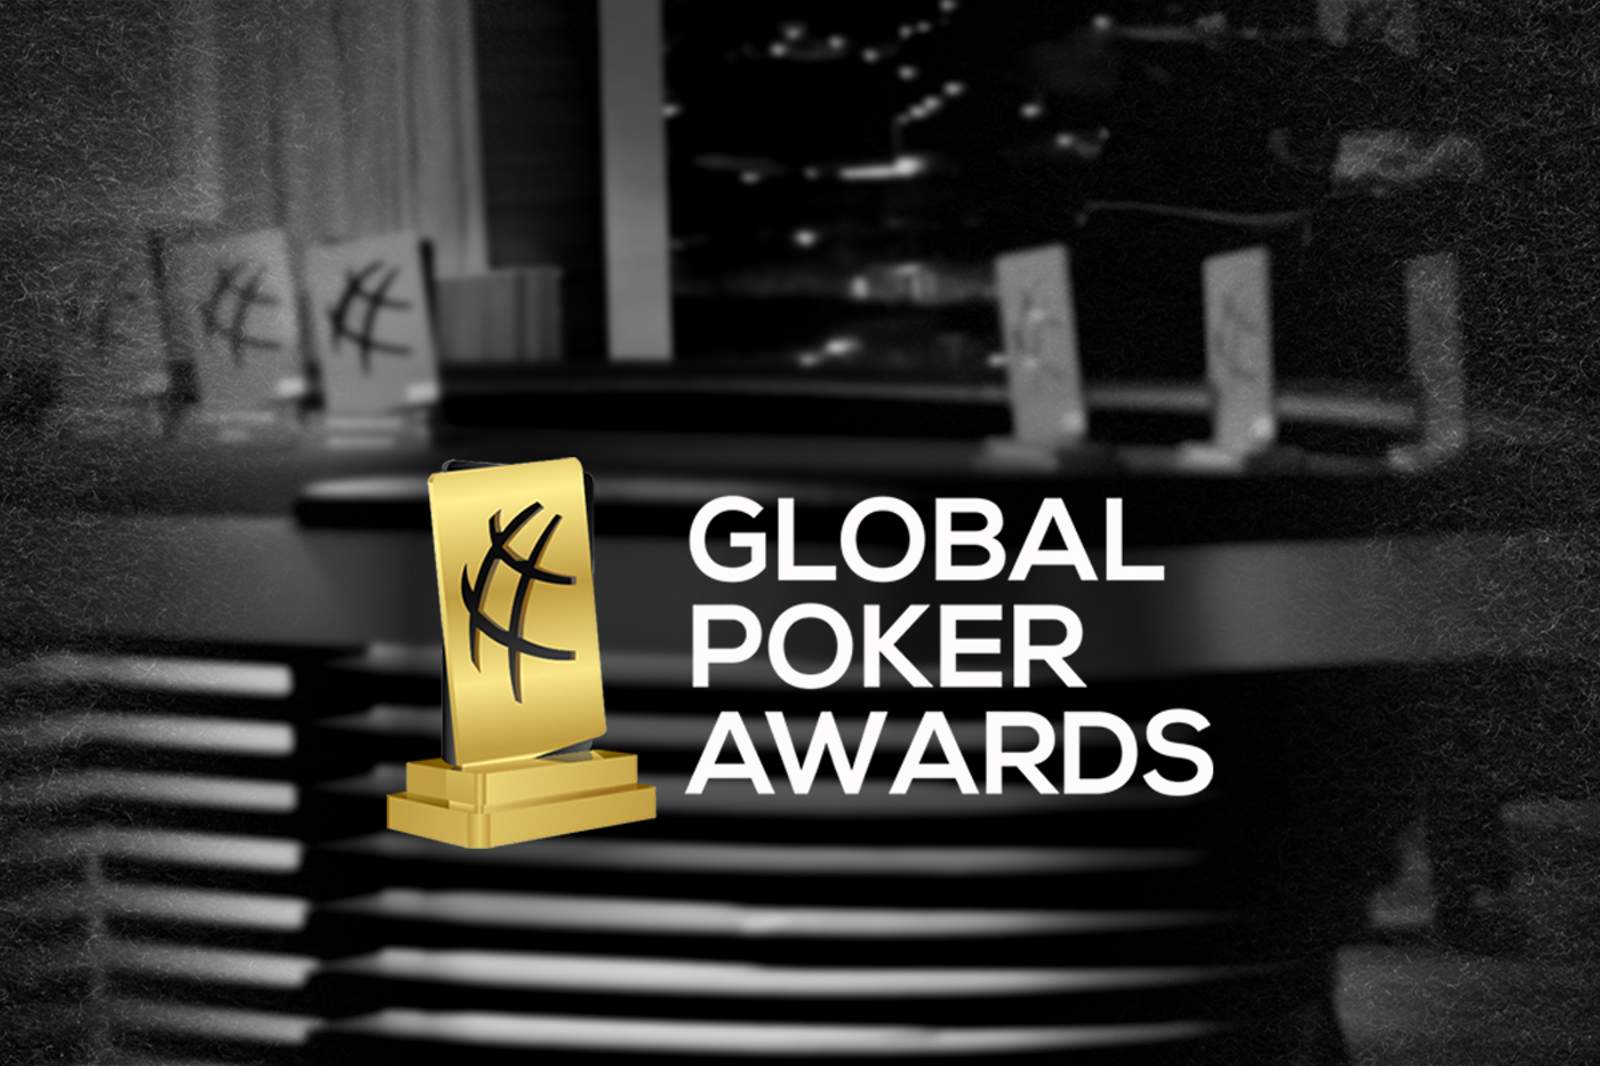 Global Poker Awards Return February 18 at the PokerGO Studio in Las Vegas